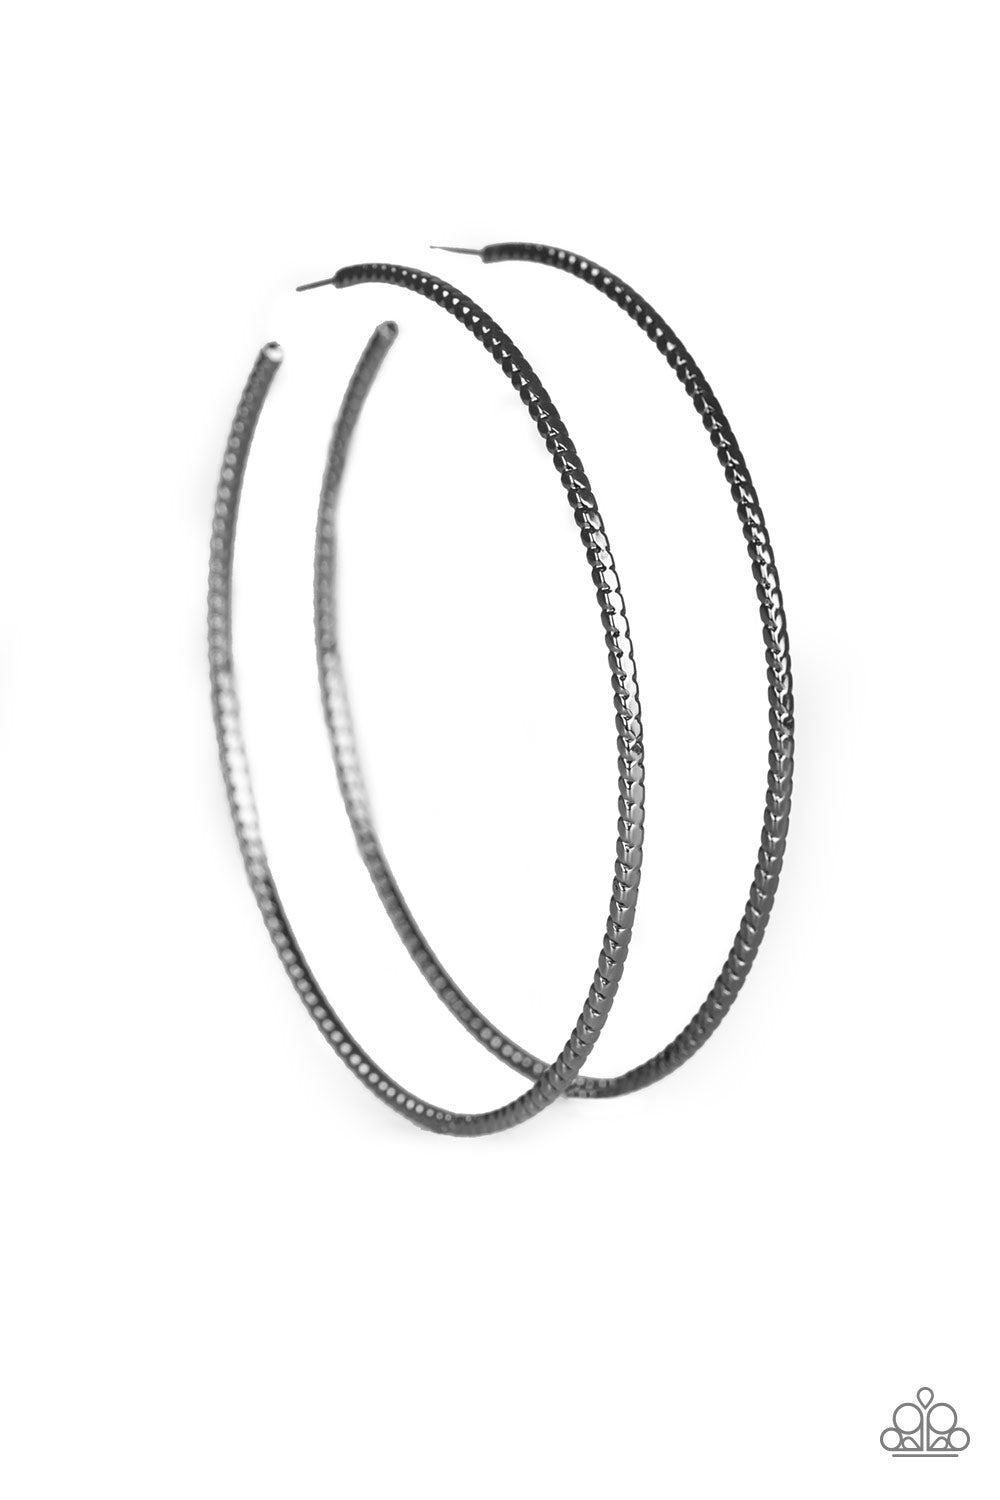 Shimmer Maker - Black hoop earrings